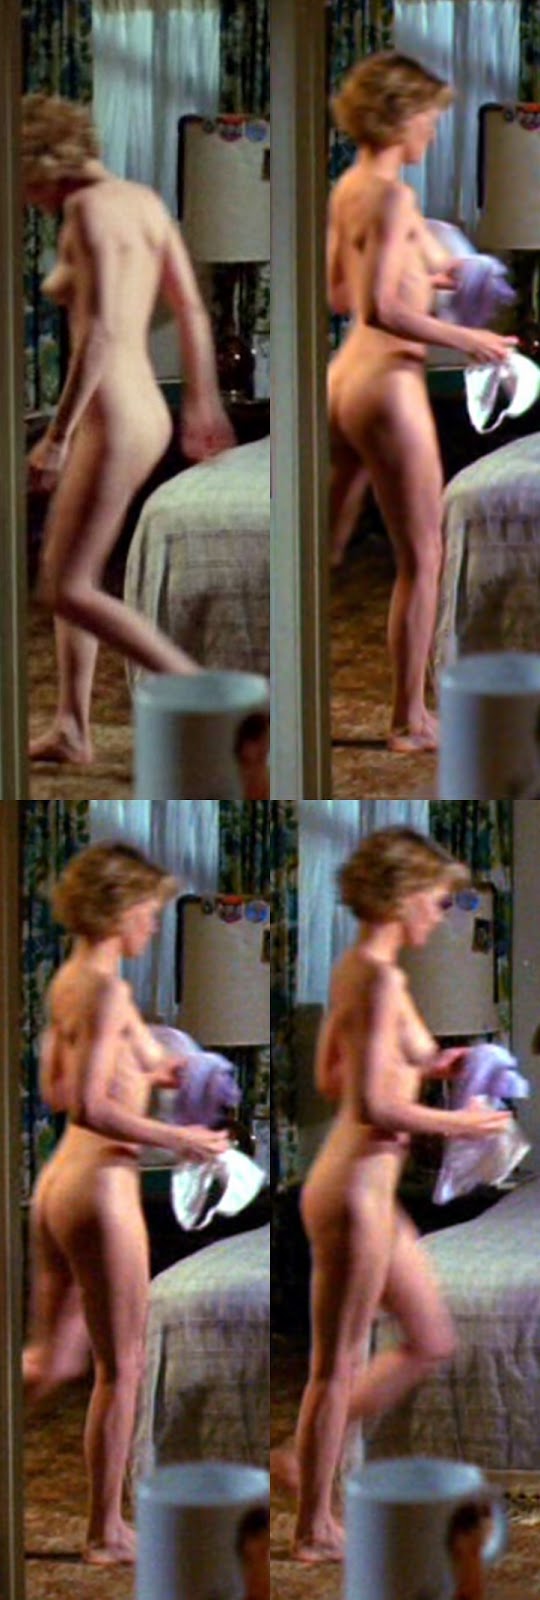 Supermodel Catwalk Slip Michelle Pfeiffer Nude Images